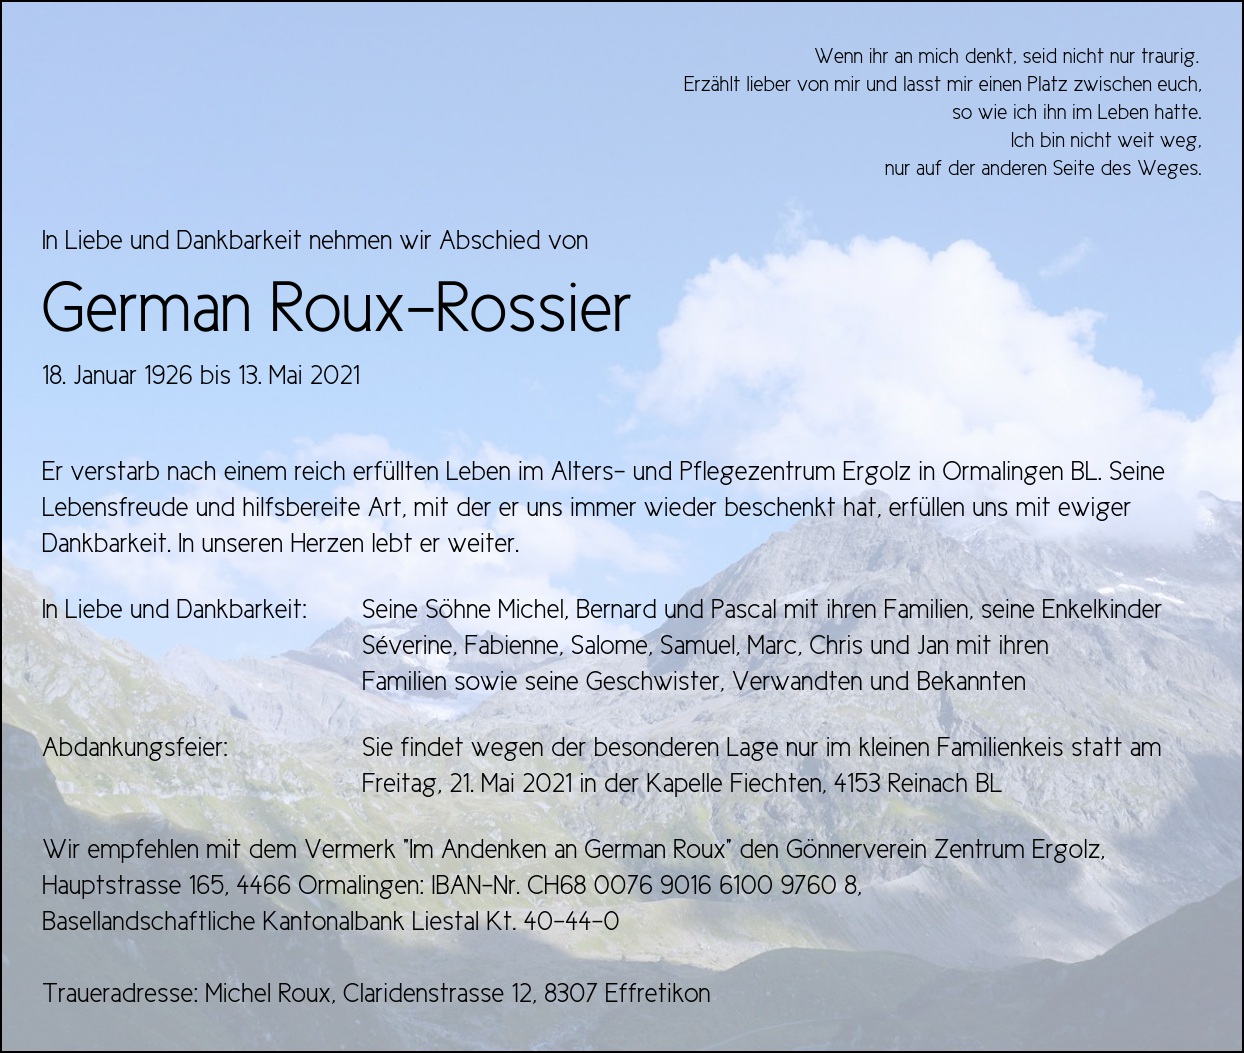 German Roux-Rossier